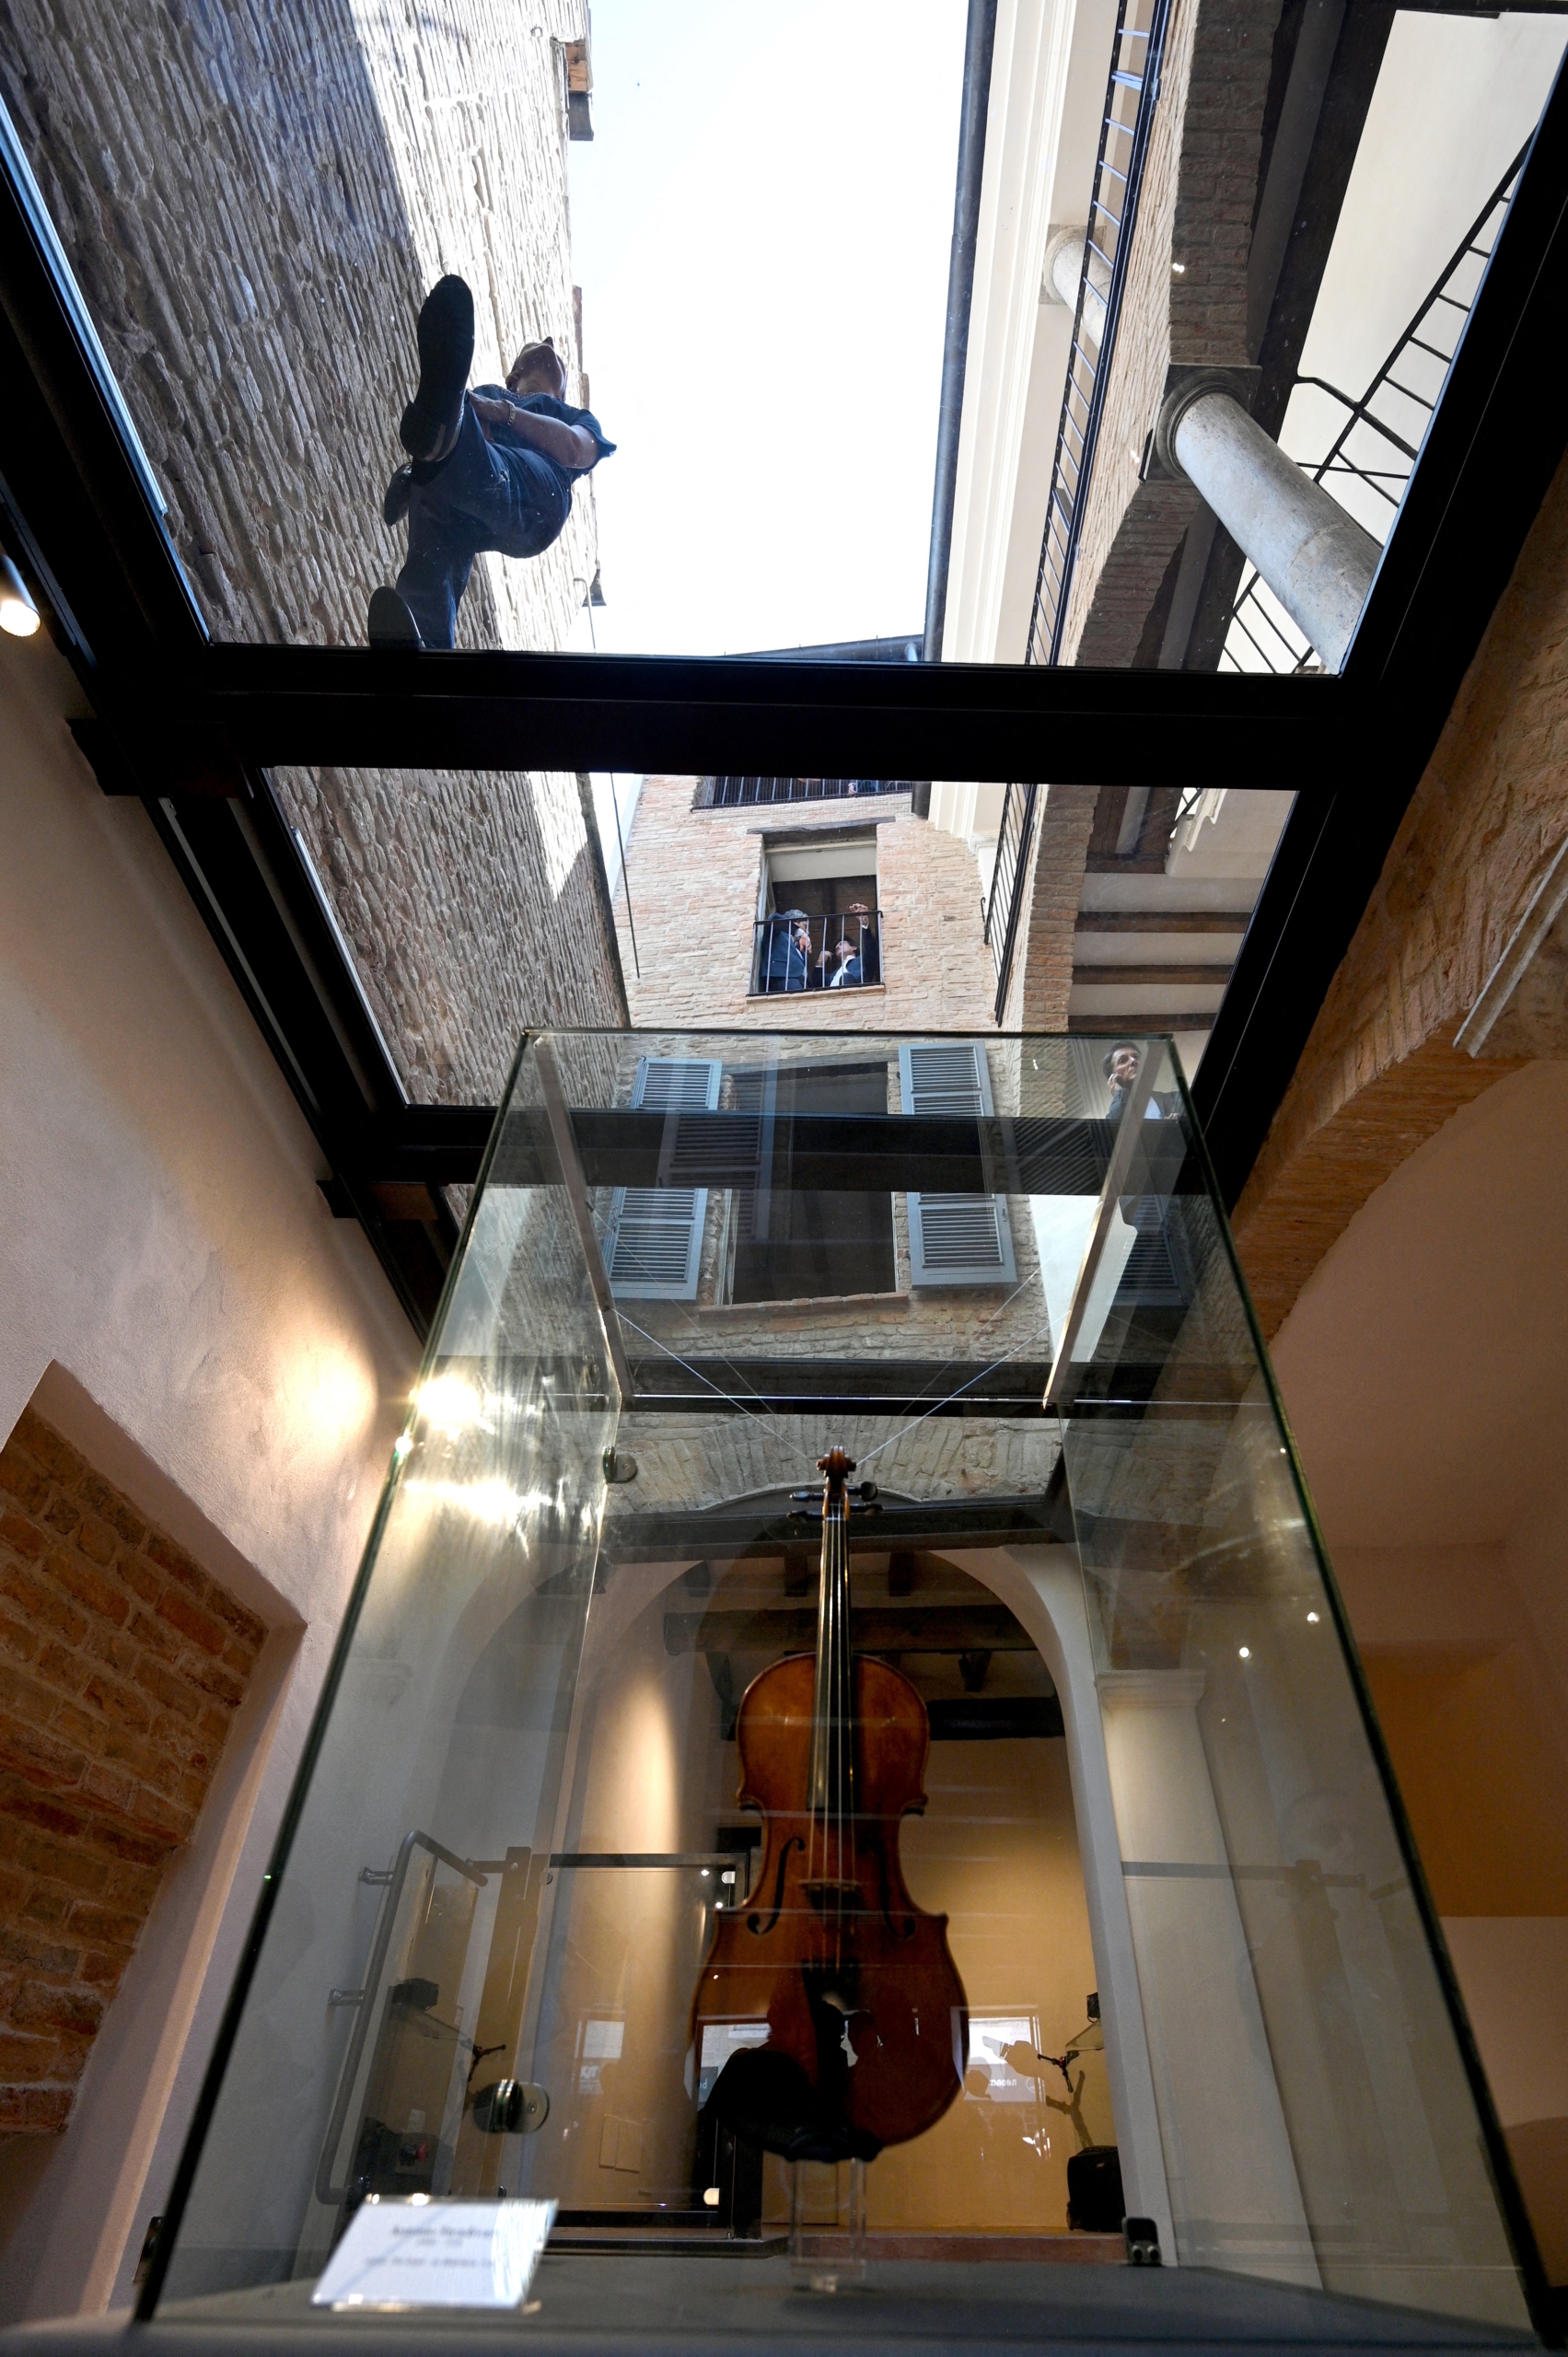 Hôm 04/07/2023, tại Cremona, Ý, sau khi ngôi nhà của nghệ nhân Stradivari mở cửa trở lại, khách tham quan đã xếp hàng dài bên ngoài ngôi nhà. Nghệ nhân chế tác đàn vĩ cầm nổi tiếng Antonio Stradivari đã từng sống và mở xưởng thiết kế của mình ở đây vào năm 1667. (Ảnh: Gabriel Bouys/AFP)